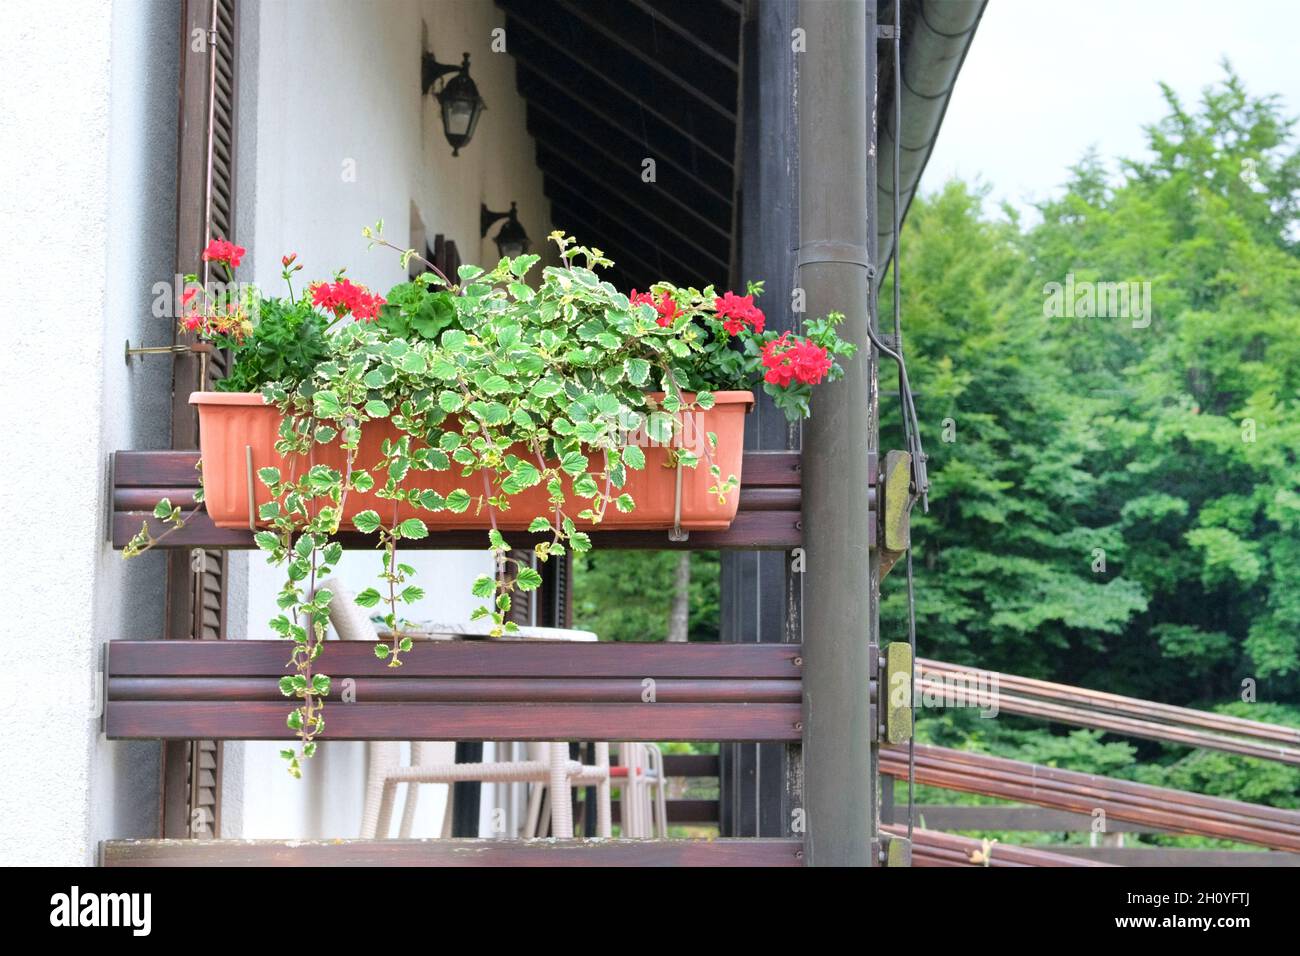 Topf mit Strauch blühender Pflanze für Landschaftsgestaltung. Bush mit roten Blüten im Blumentopf. Stockfoto